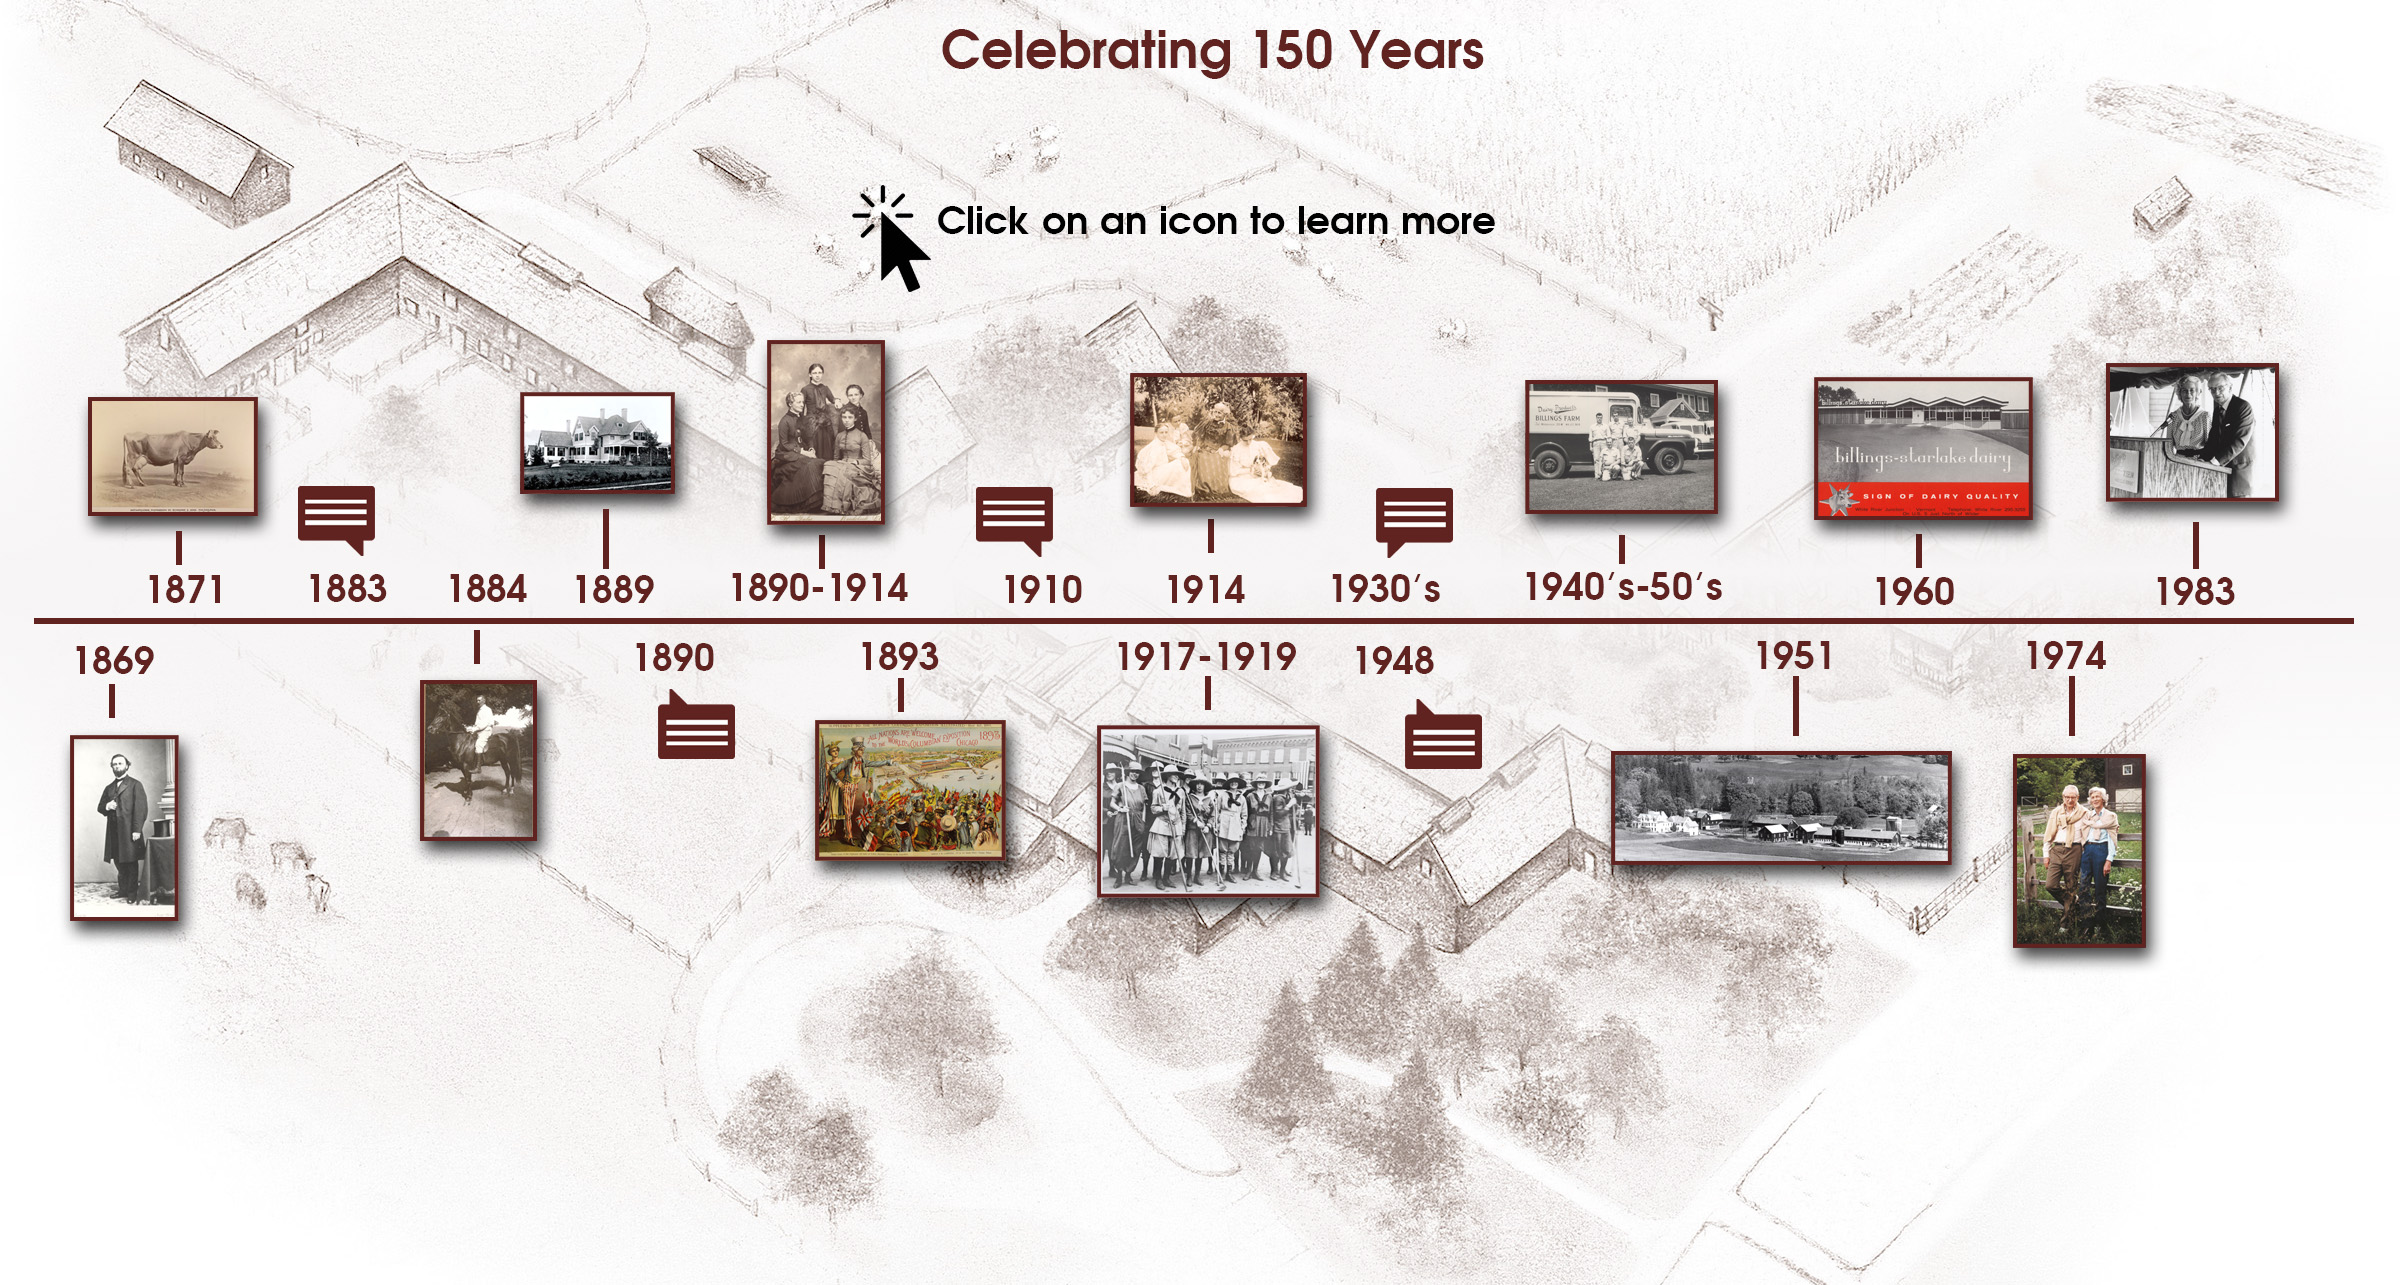 Celebrating 150 years